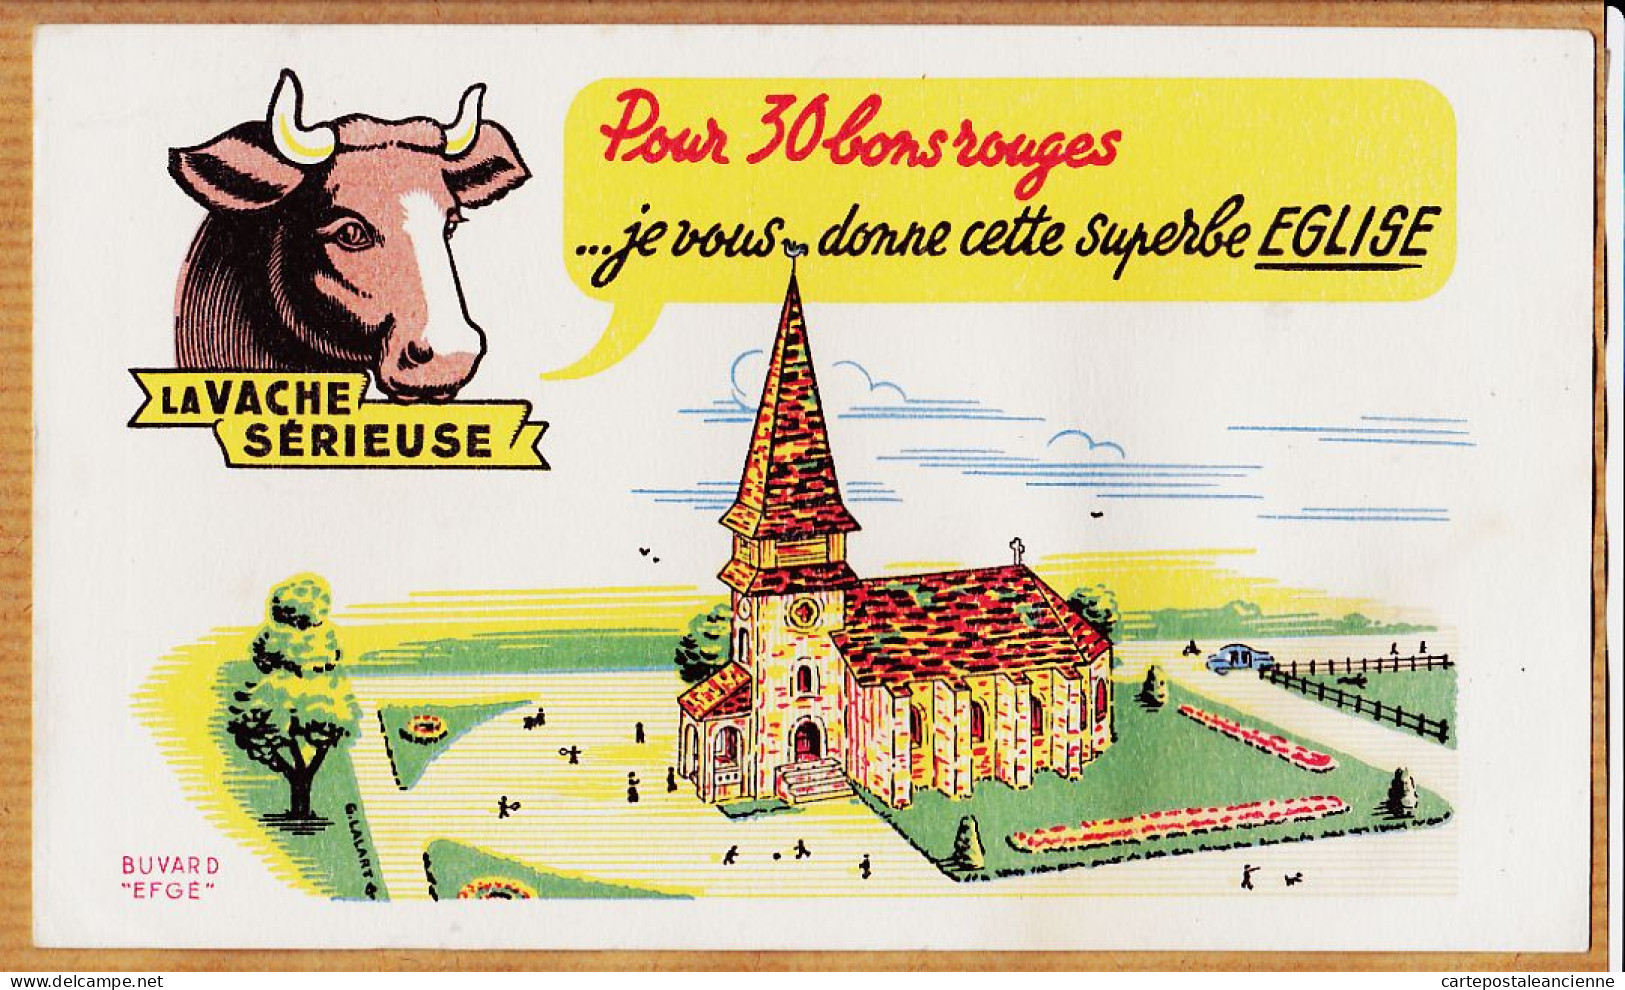 14851 / ⭐ LA VACHE SERIEUSE Crème Double Crème De Gruyère Pour 30 Bons Cette Superbe Eglise / Buvard EFGE 1950s Cppub - Alimentare